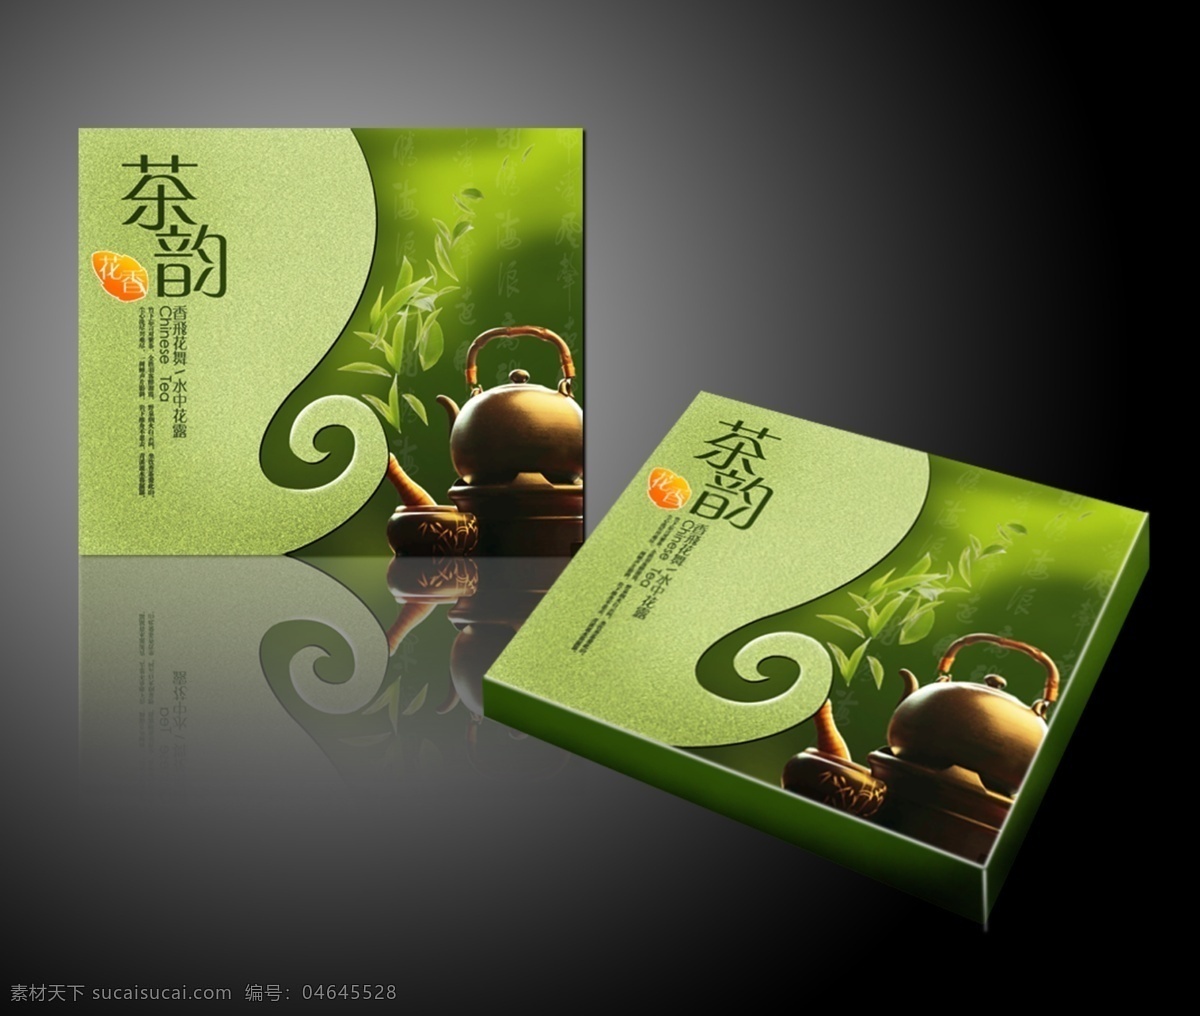 包装设计 包装设计欣赏 茶壶 茶叶 茶叶包装 茶叶包装设计 茶韵 广告设计模板 立体效果 效果图 展开图 包装 分层